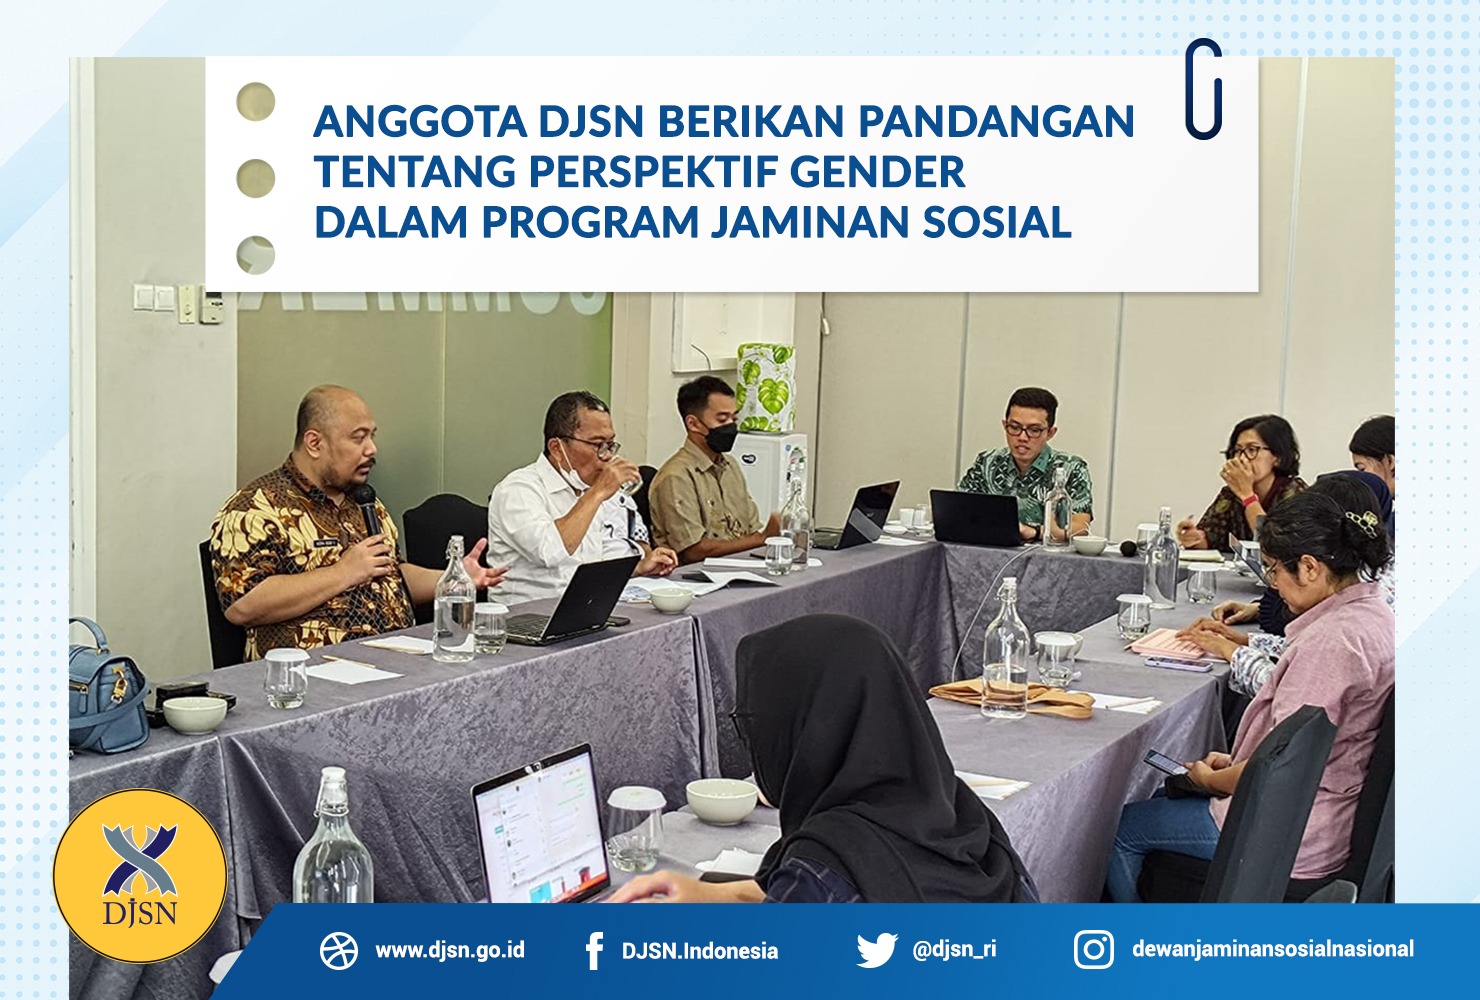 Anggota DJSN Berikan Pandangan tentang Perspektif Gender dalam Program Jaminan Sosial